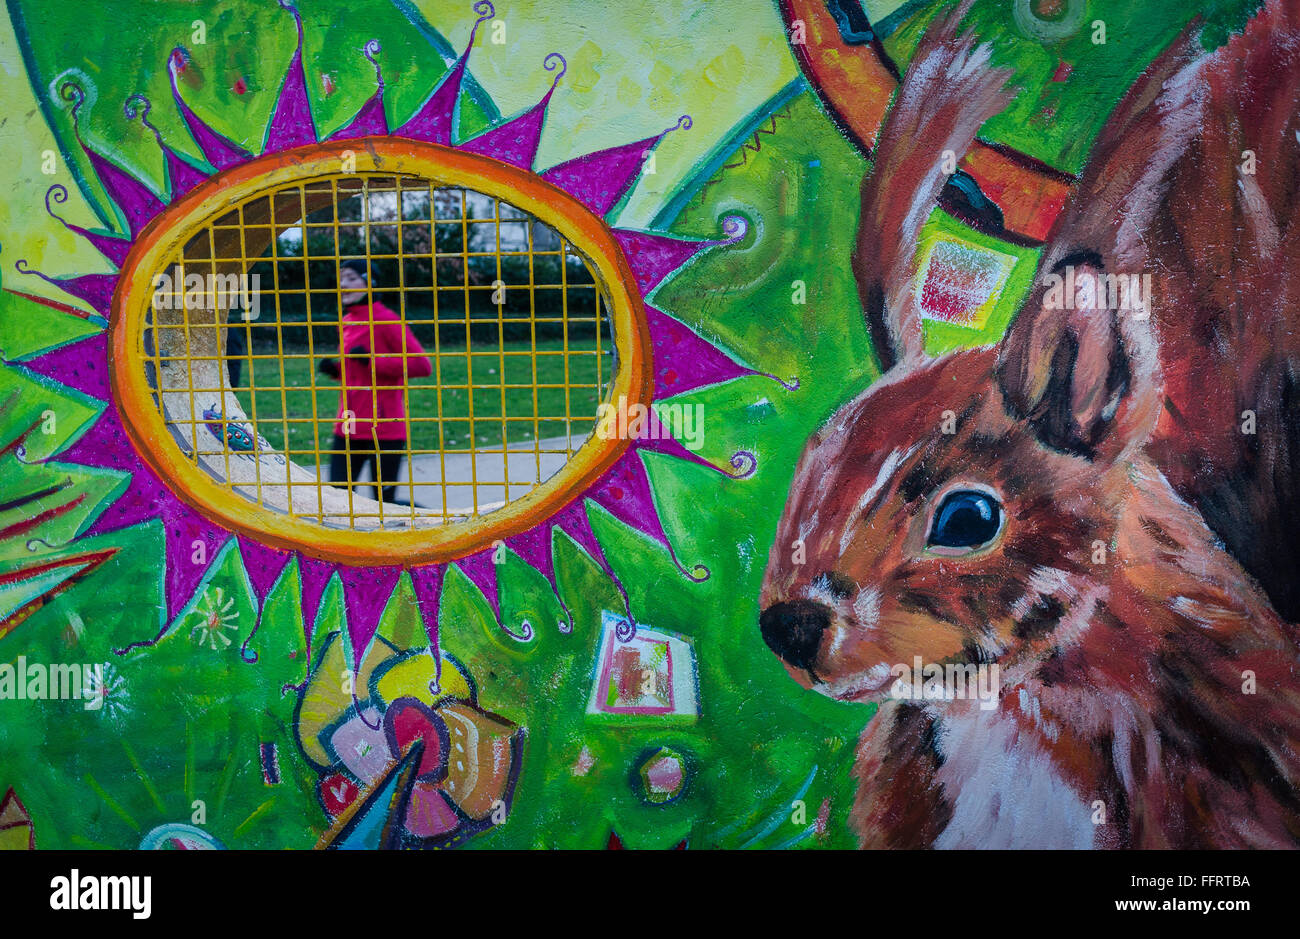 Ein Jogger führt vorbei an einem Fenster in einer Wand, auf der ein riesiges Eichhörnchen im Guenthersburg Park in Frankfurt Am Main, Deutschland, 16. Februar 2016 gemalt worden ist. Die Wandmalerei "Drei für die Wand" von den drei Malern Waechtler, Heidlas-Mai und Grambart-Delalic auf dem Park-Eingang wurde im Auftrag der Frankfurter Parks Commission. Foto: FRANK RUMOENHORST/dpa Stockfoto